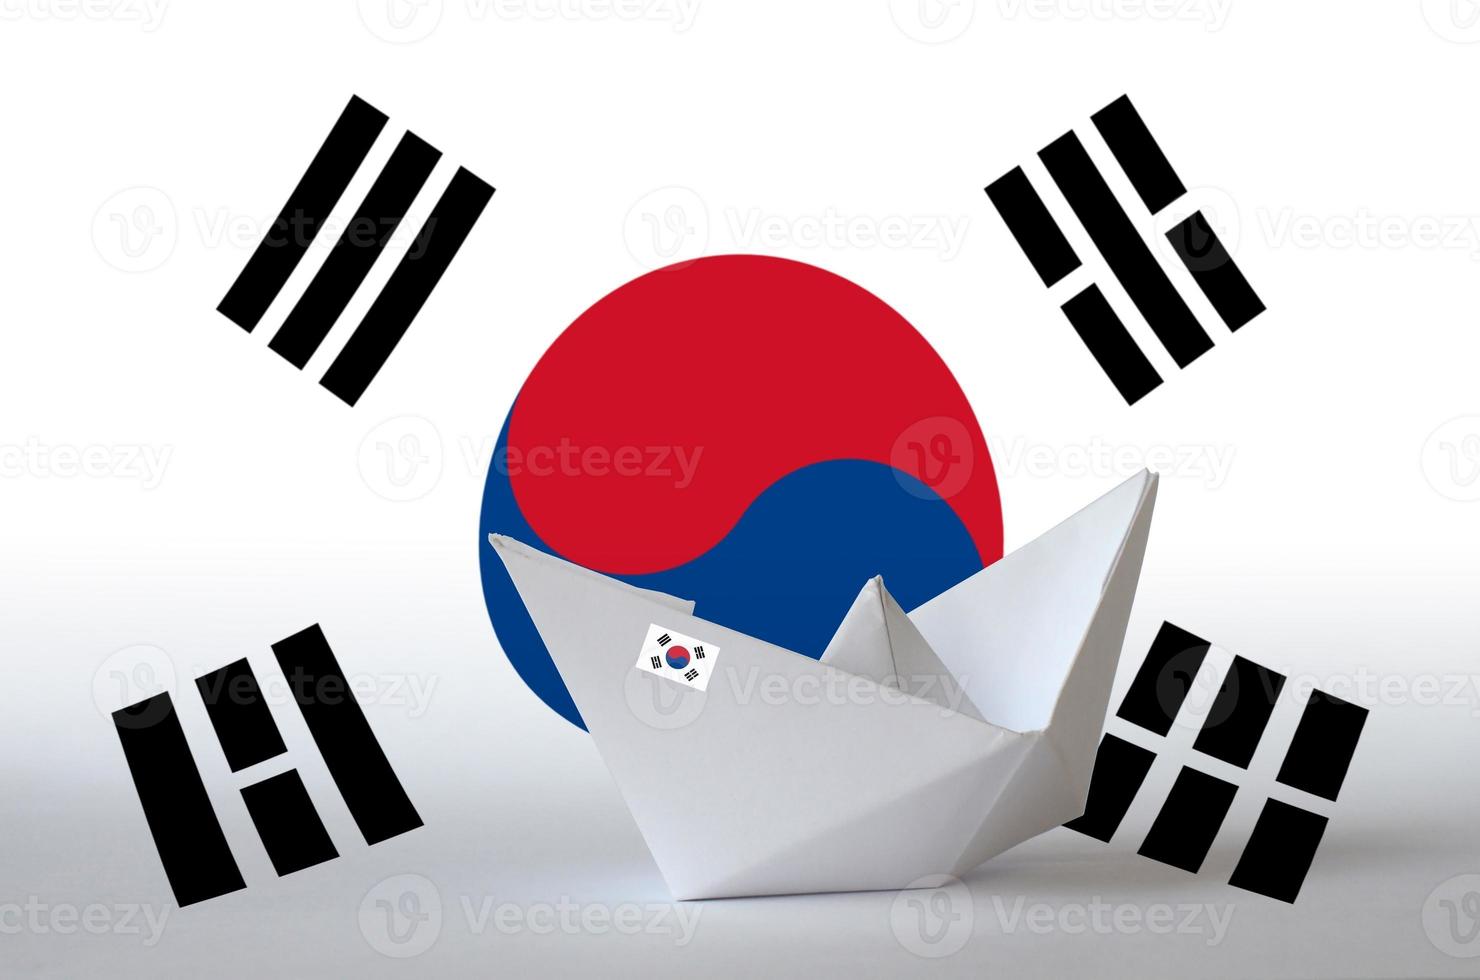 bandeira da coreia do sul retratada em closeup de navio de origami de papel. conceito de artes artesanais foto